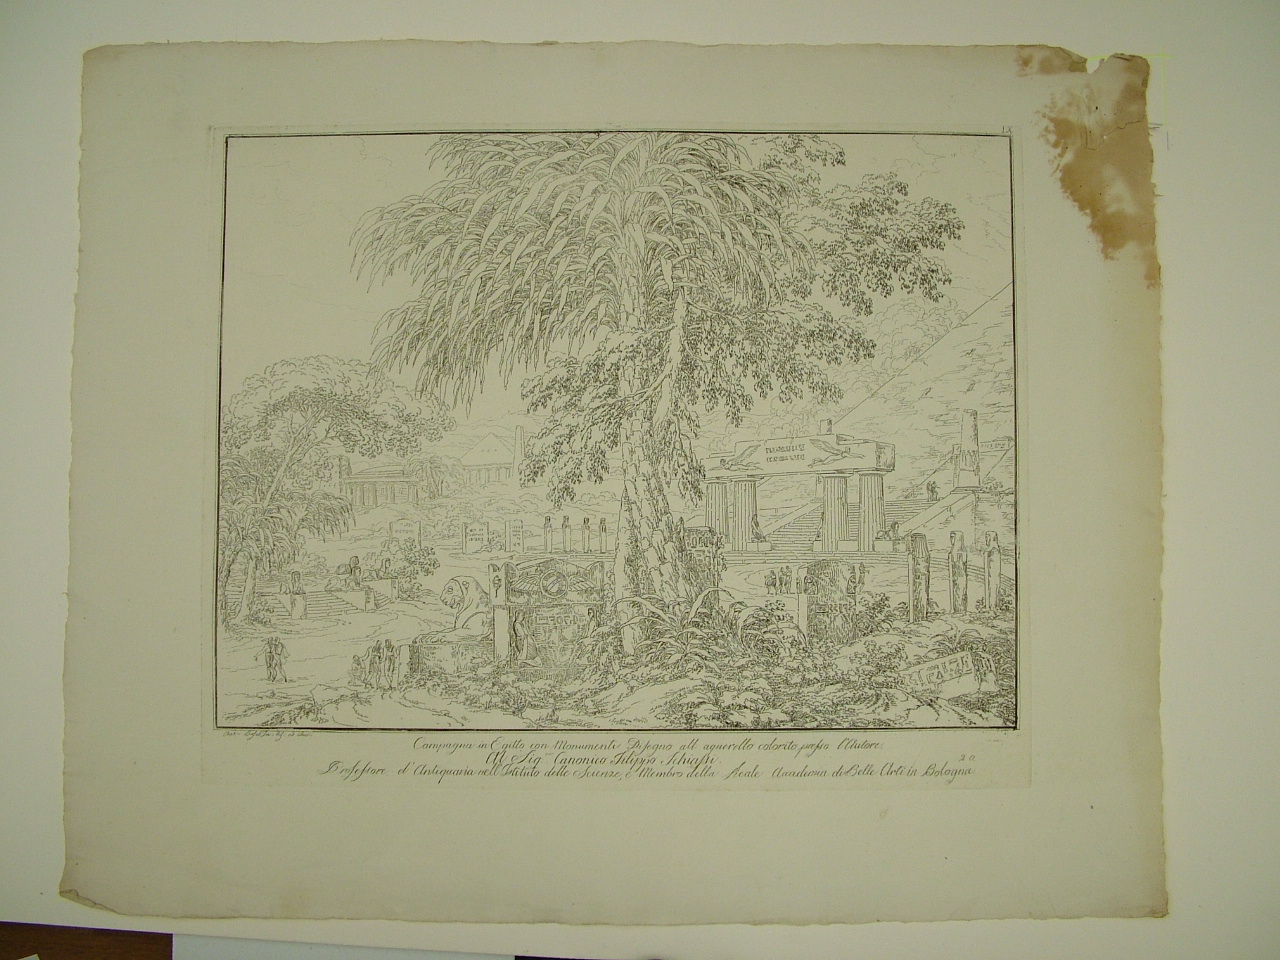 Campagna in Egitto con monumenti, paesaggio con architetture (stampa) di Basoli Antonio (inizio sec. XIX)